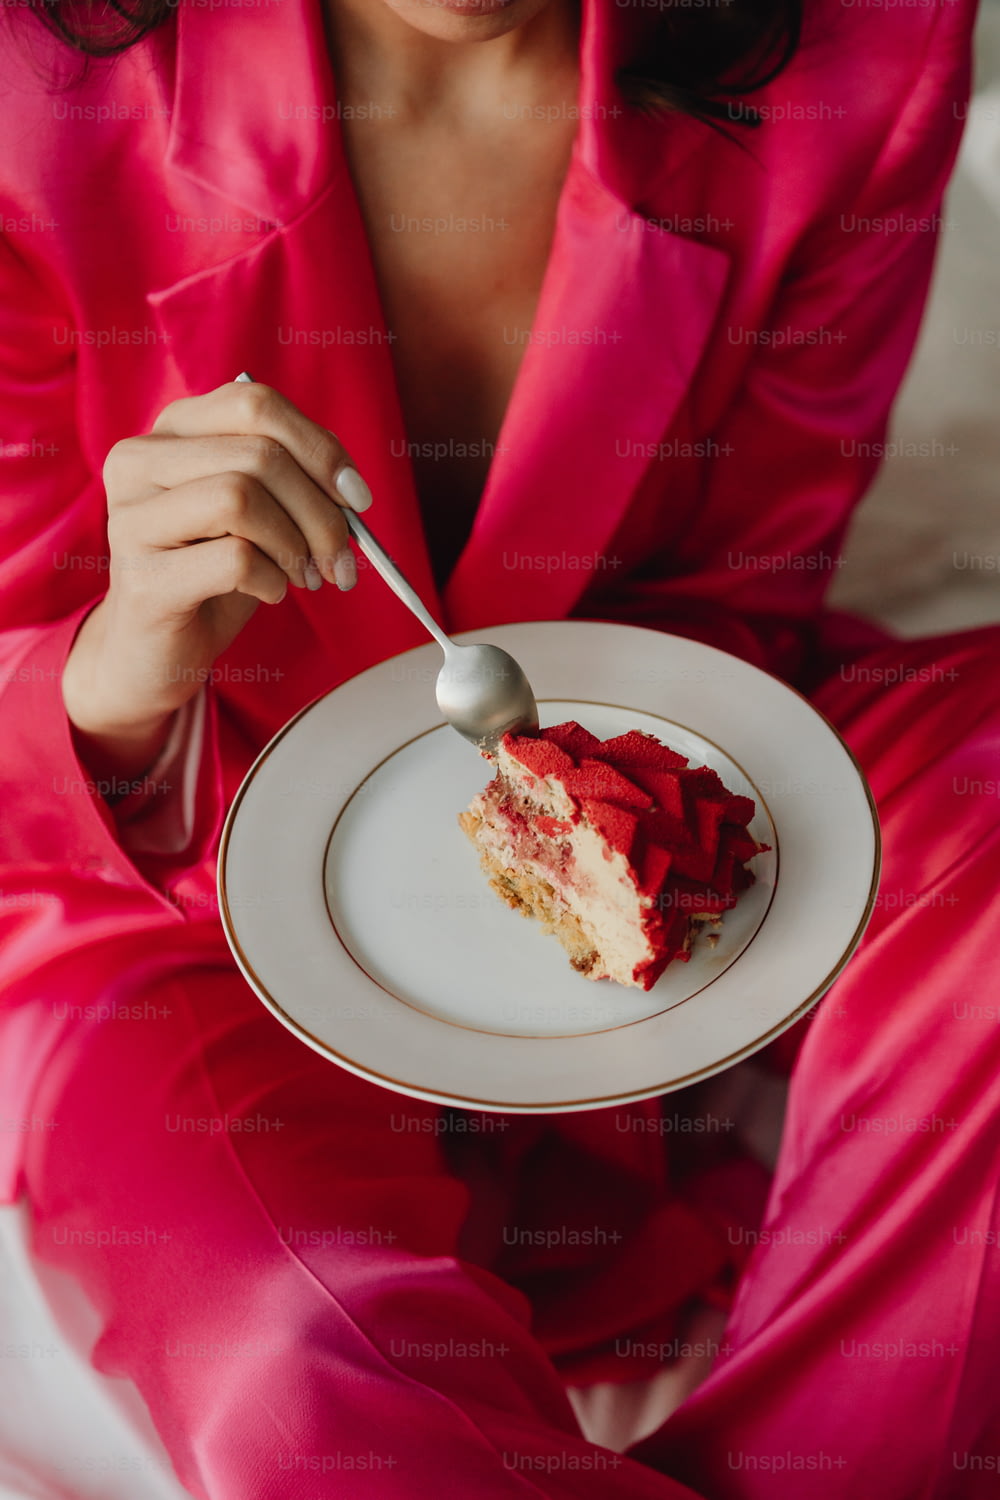 ピンクのスーツを着た女性がケーキが乗った皿を持つ